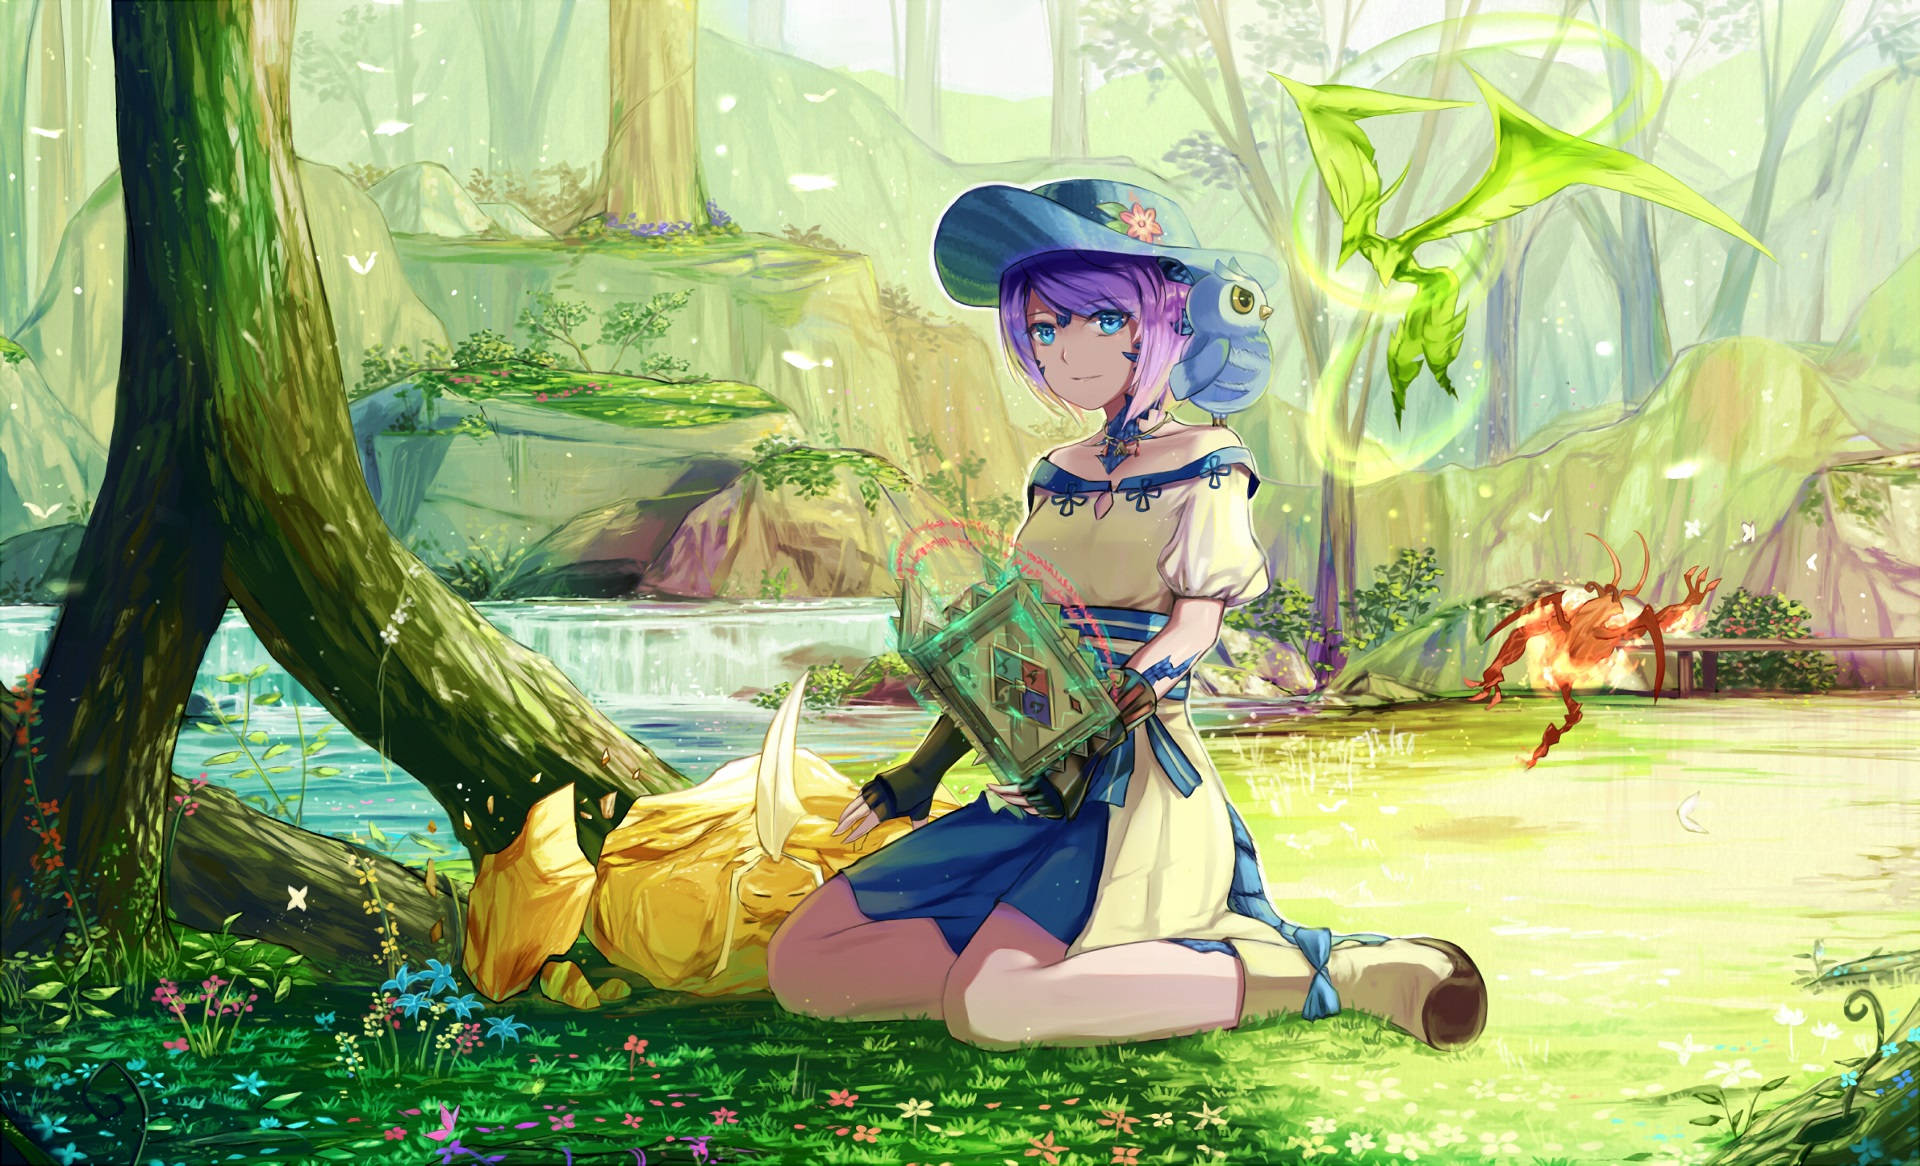 Resagenom Den Förtrollade Skogen I Final Fantasy Xiv. Wallpaper